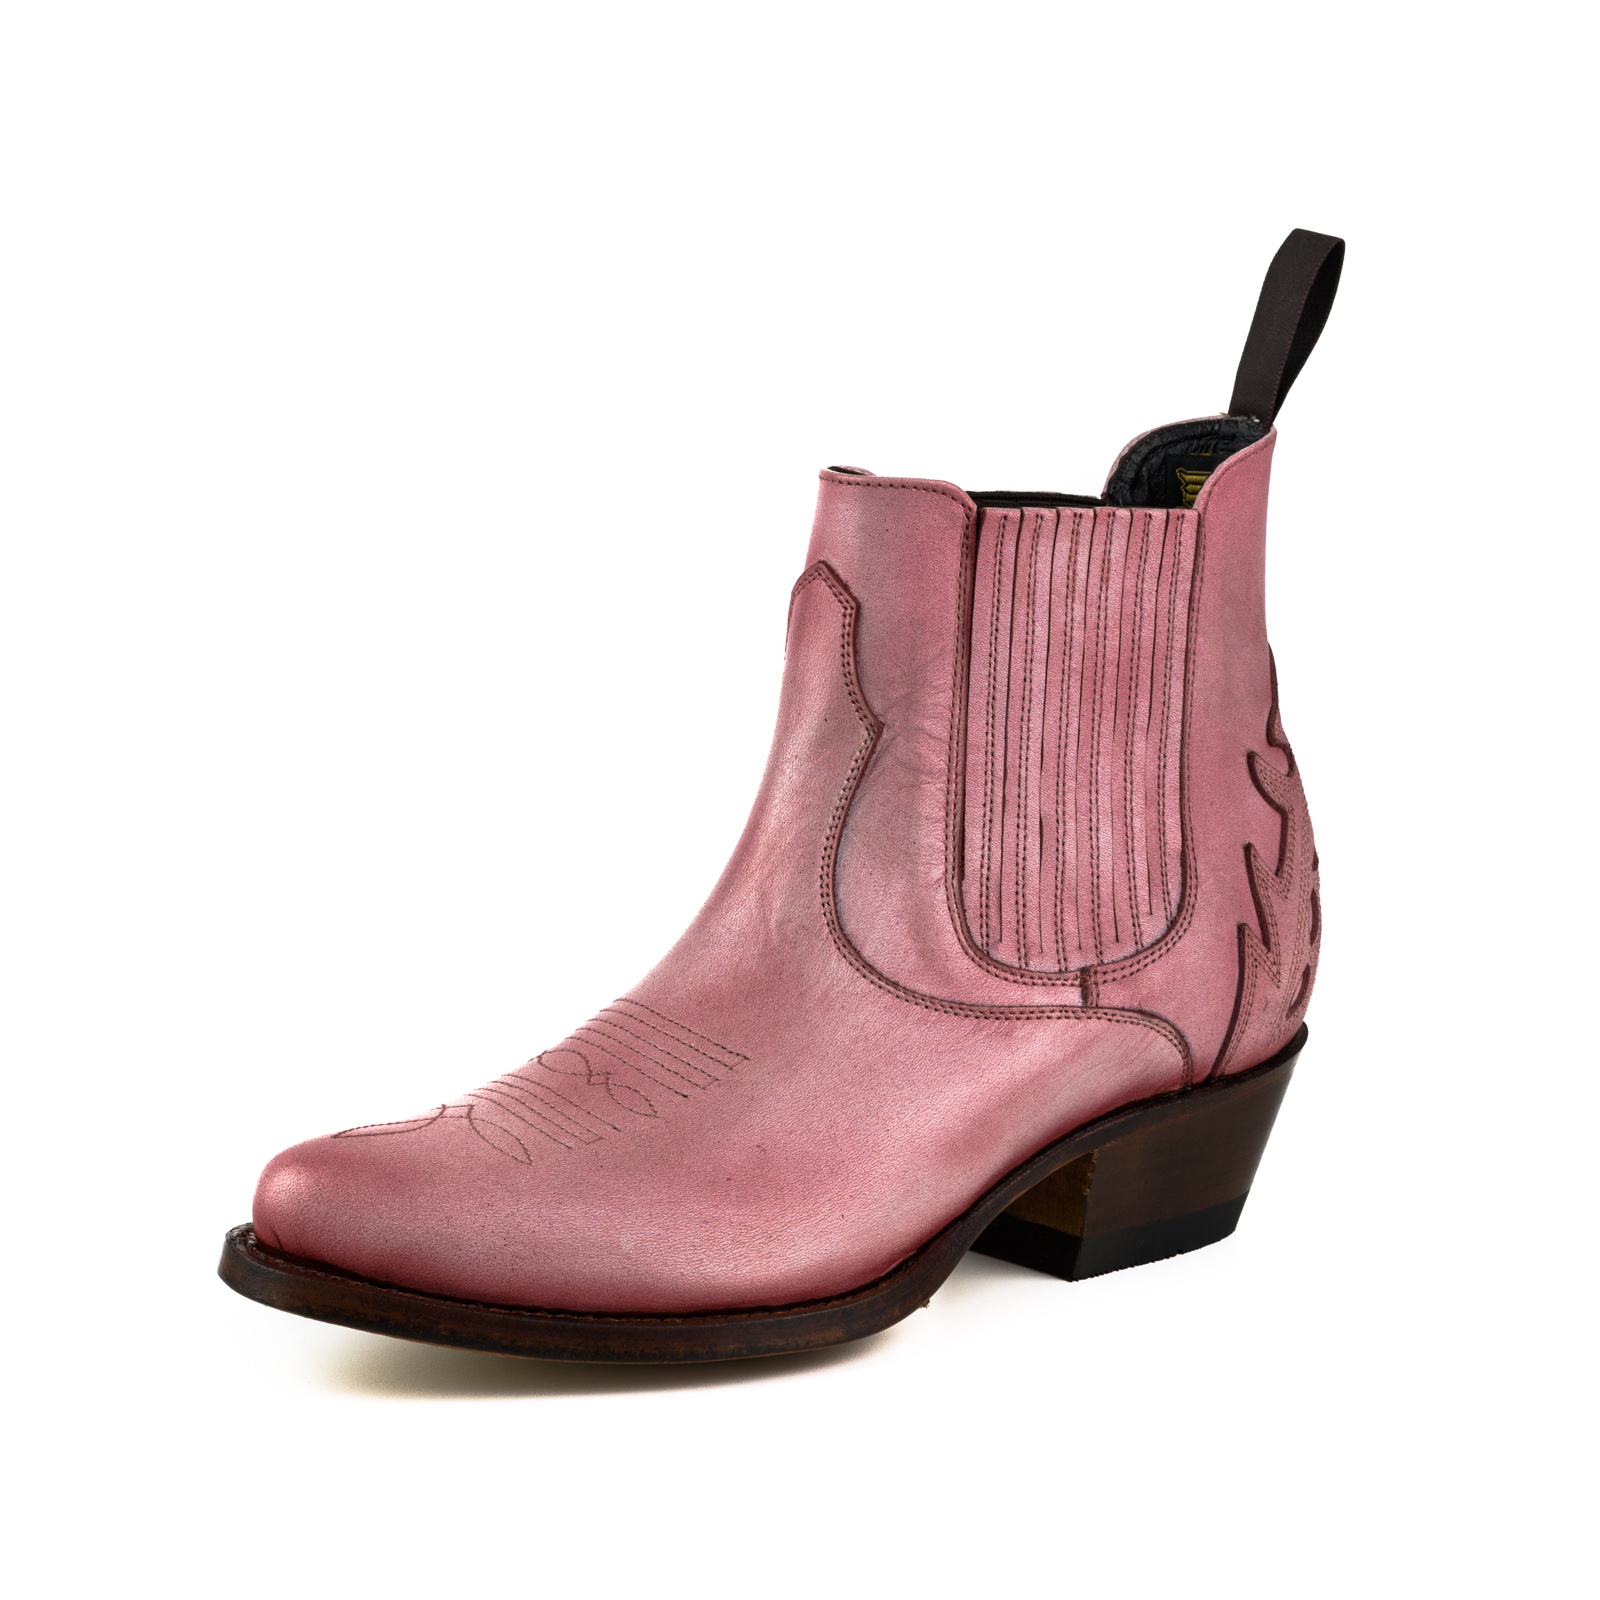 mayura-boots-modelo-marilyn-2487-rosa-1